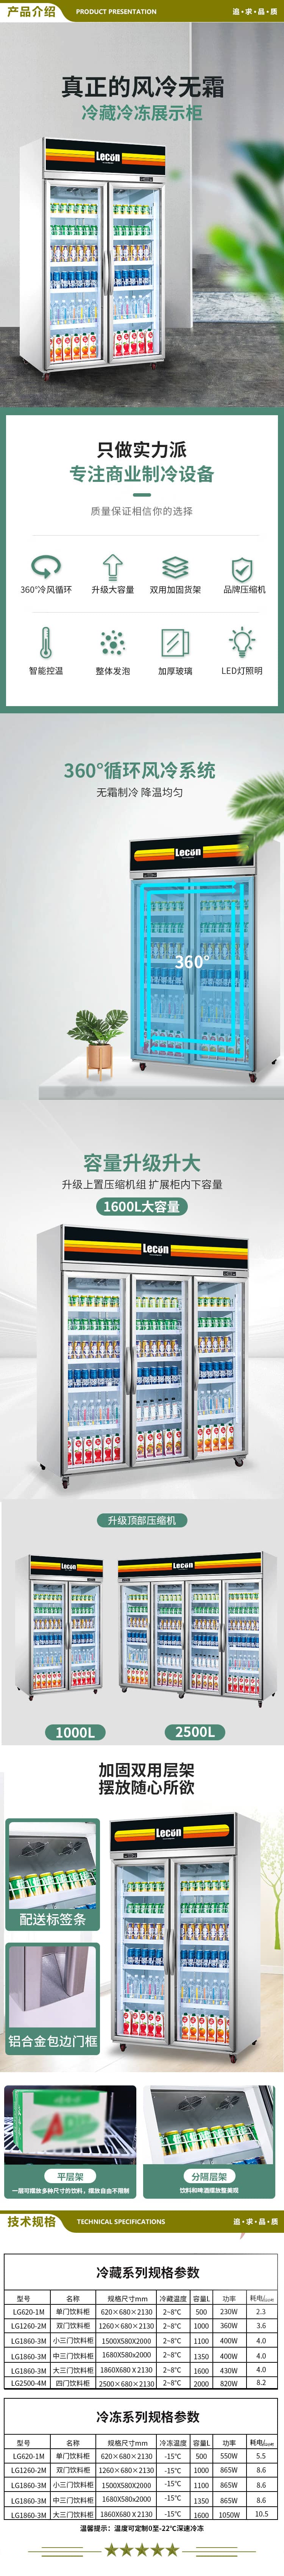 乐创(lecon) L-1860FL-1 超市冰柜商用展示柜冷藏风冷饮料柜士多店便利店冰箱水果冷藏柜保鲜柜大三门  2.jpg